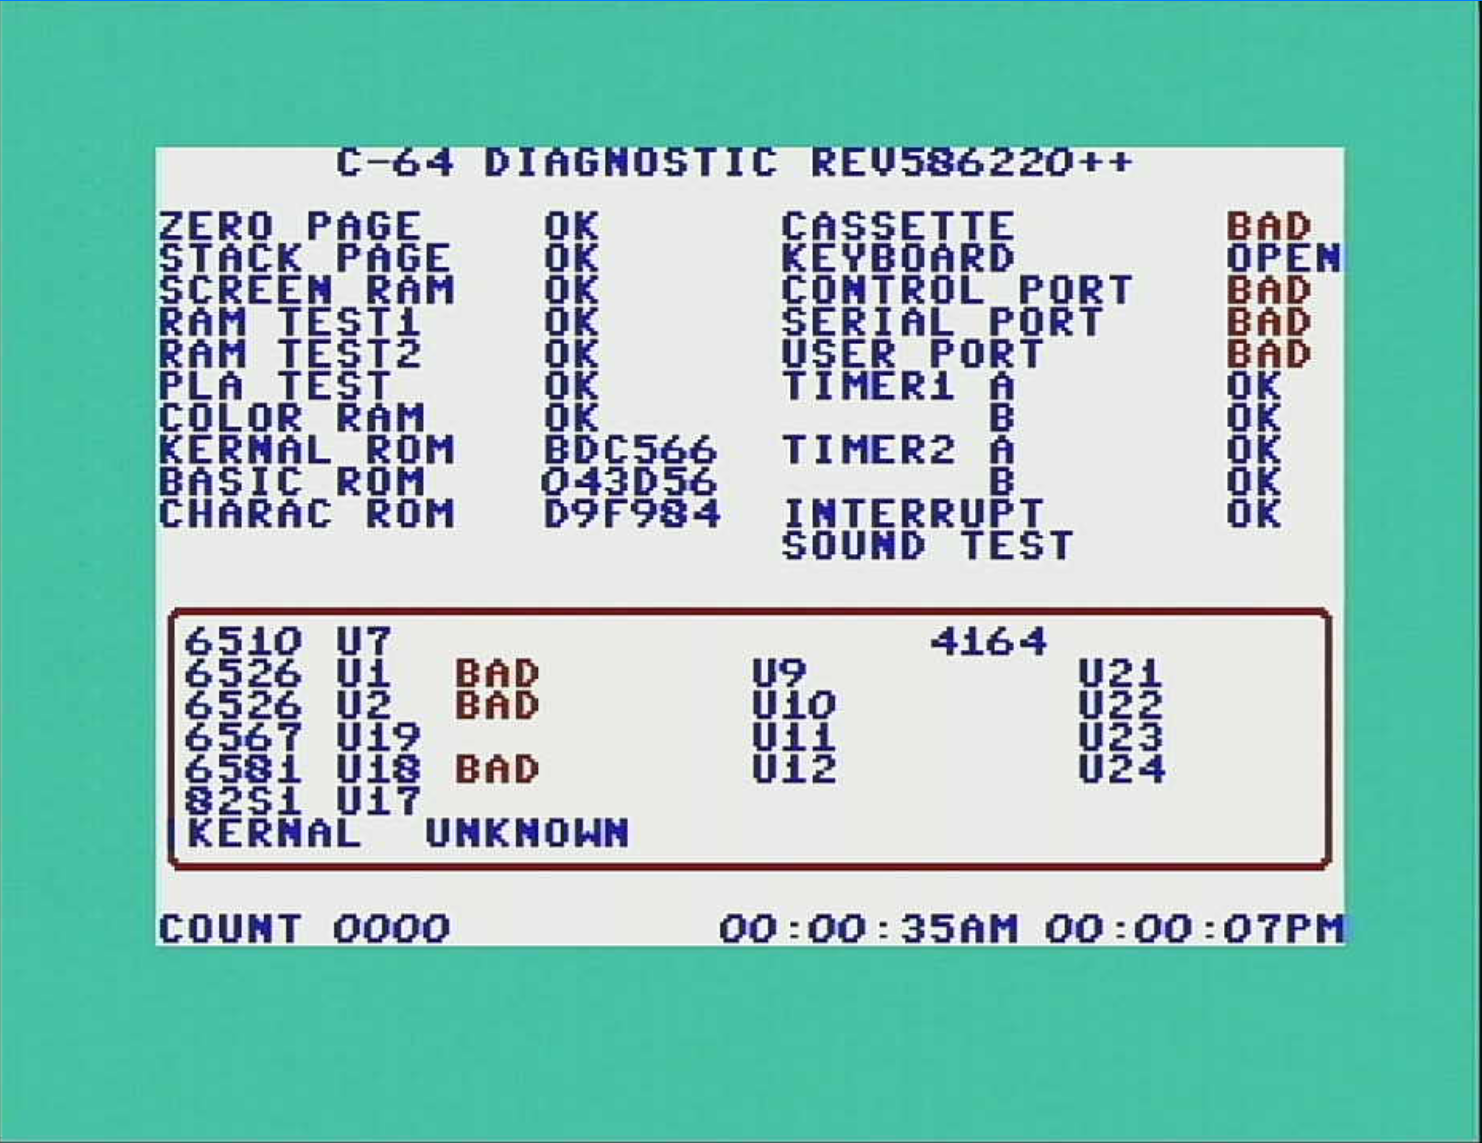 Commodore 64 diagnostic Cartridge rev 586220 